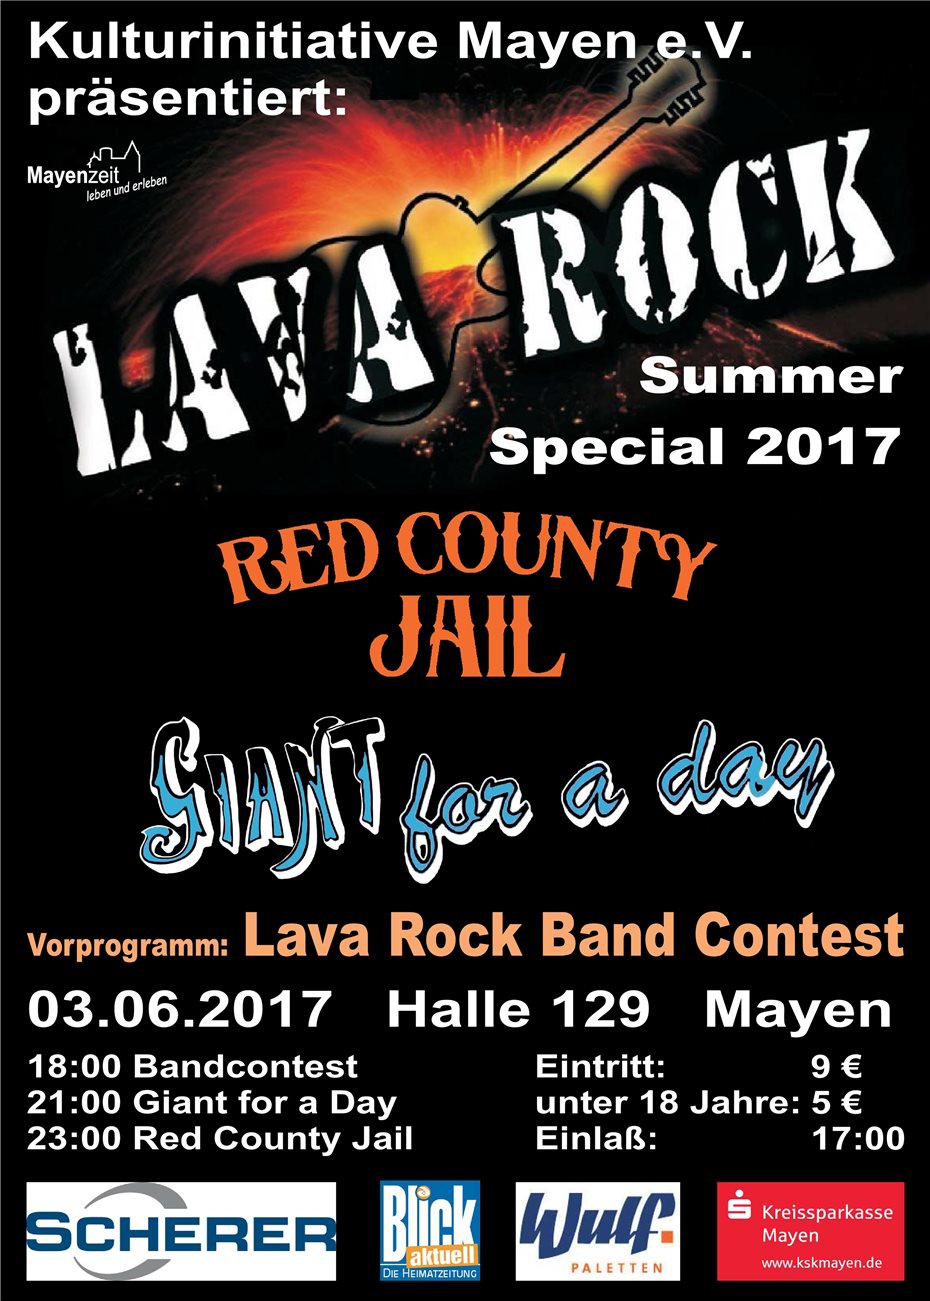 Das „Lava Rock -
Summer Special 2017“ startet durch